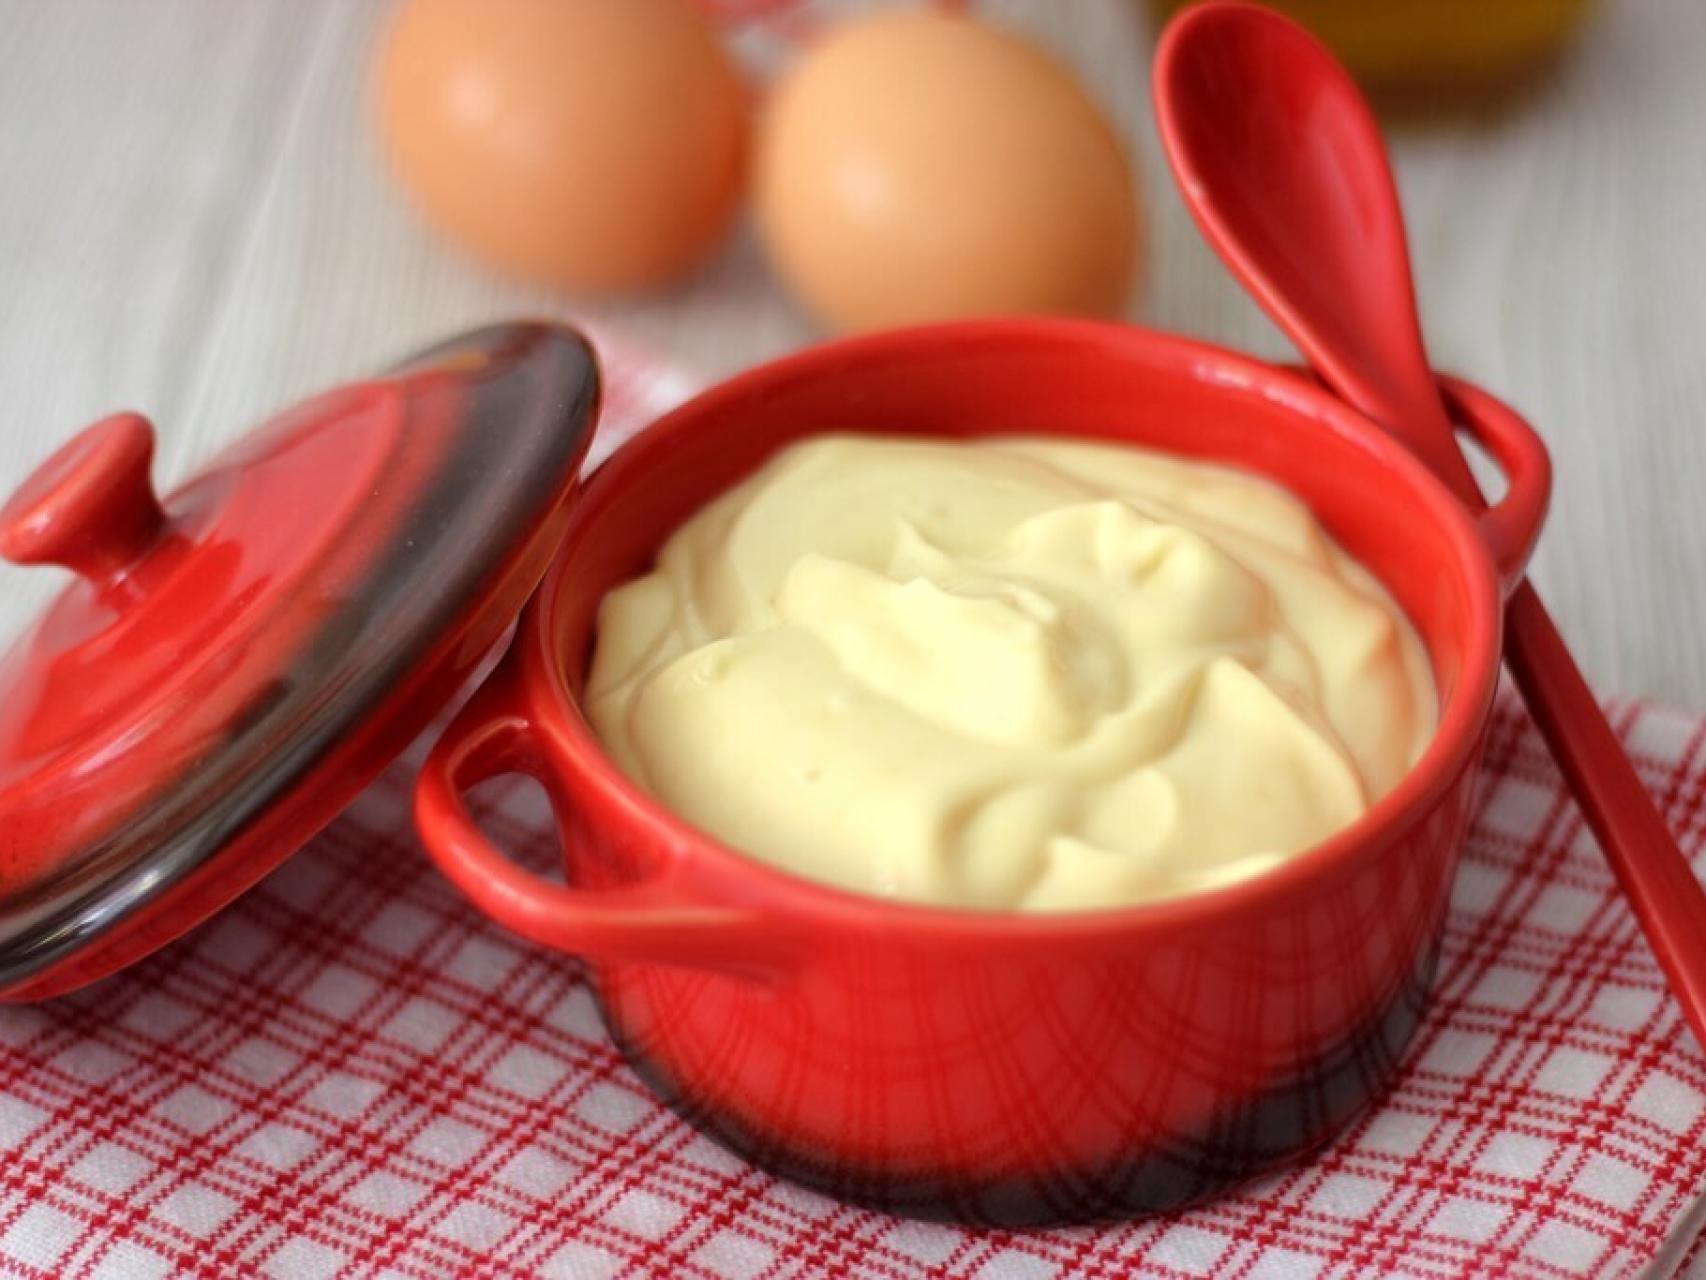 El concepto de hacer mayonesa casera a partir de ingredientes